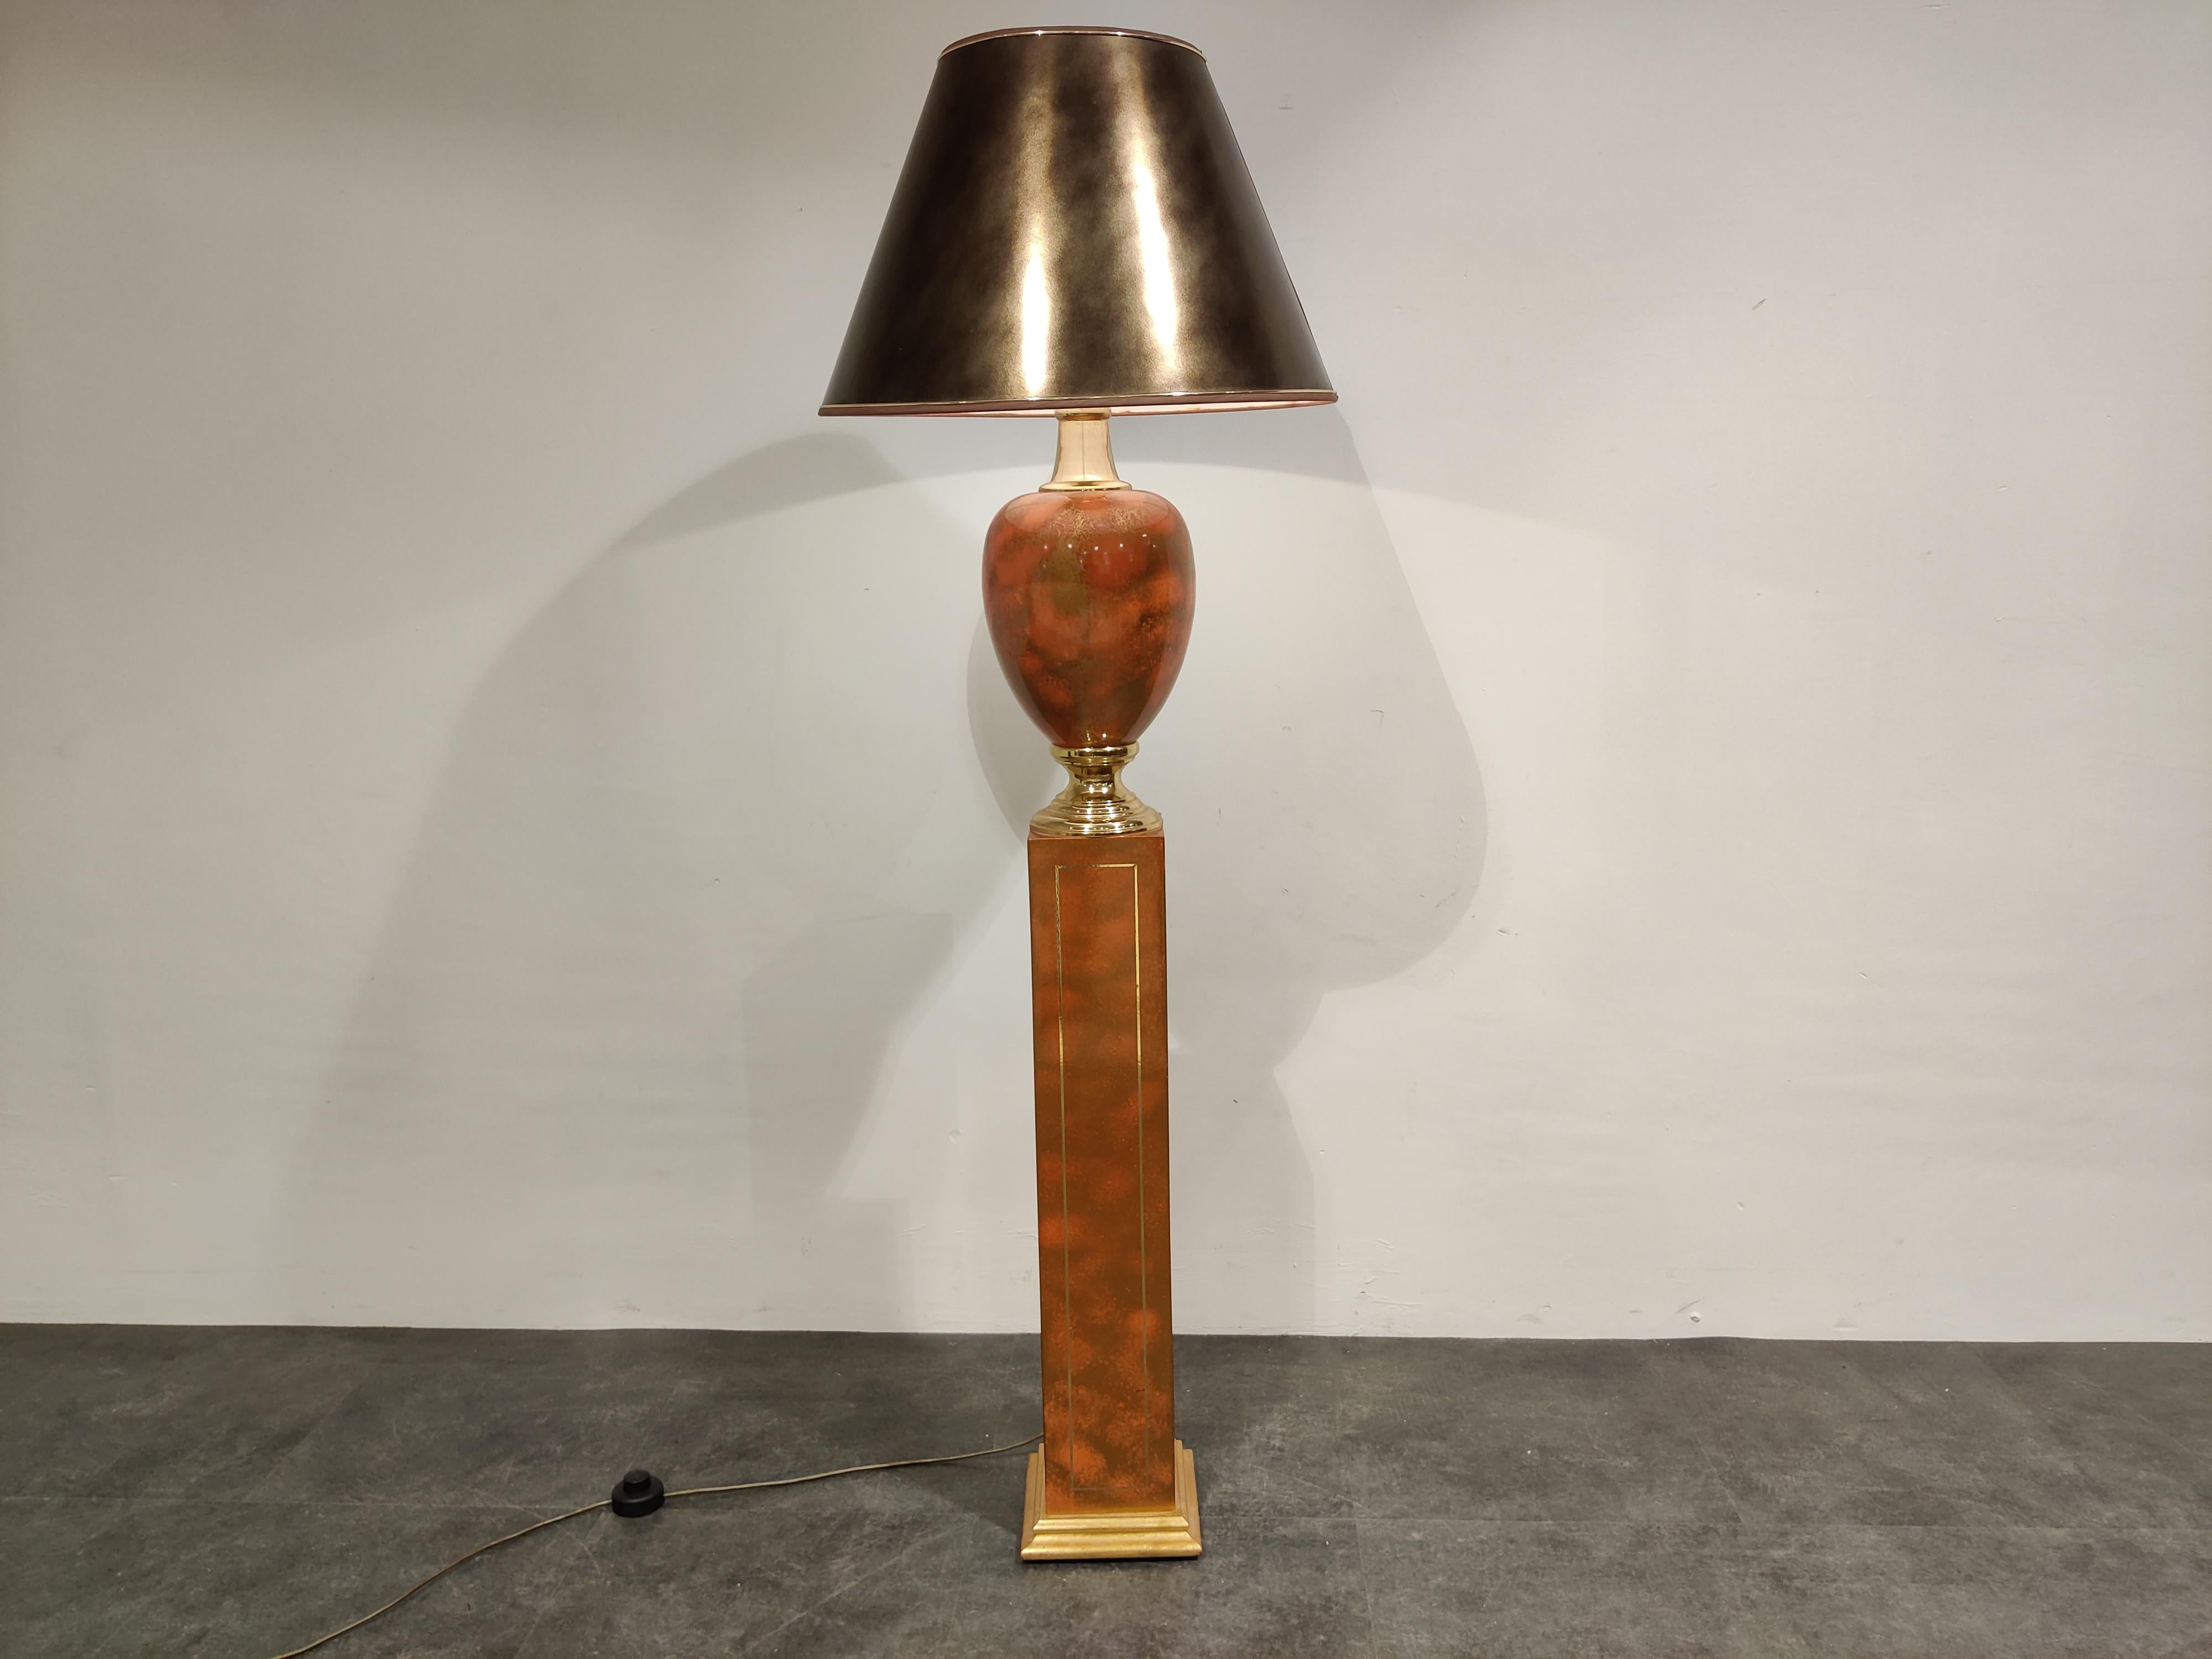 Elegante vasenförmige Stehleuchte von Maison Le Dauphin.

Diese teilweise aus Messing gefertigte Stehlampe hat eine tolle Farbe, dunkelrot oder orange

Schöne Hollywood-Regency-Beleuchtung.

Kommt mit einem Zeitraum Lampenschirm, der eine